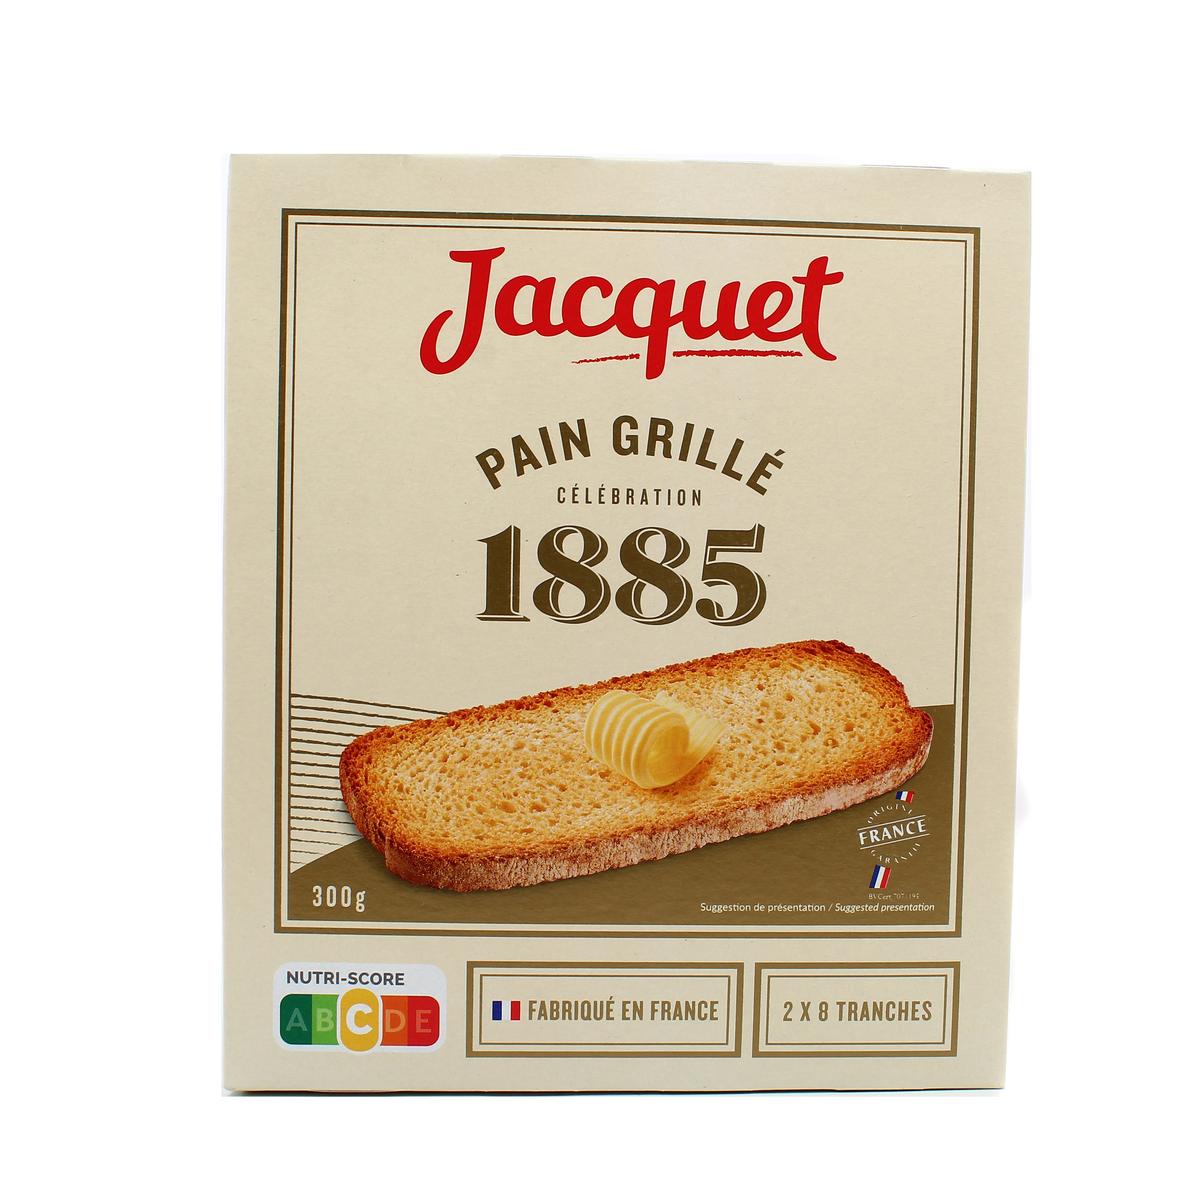 Achat / Vente Jacquet Pain grillé 1885 2 étuis de 8 tranches, 300g